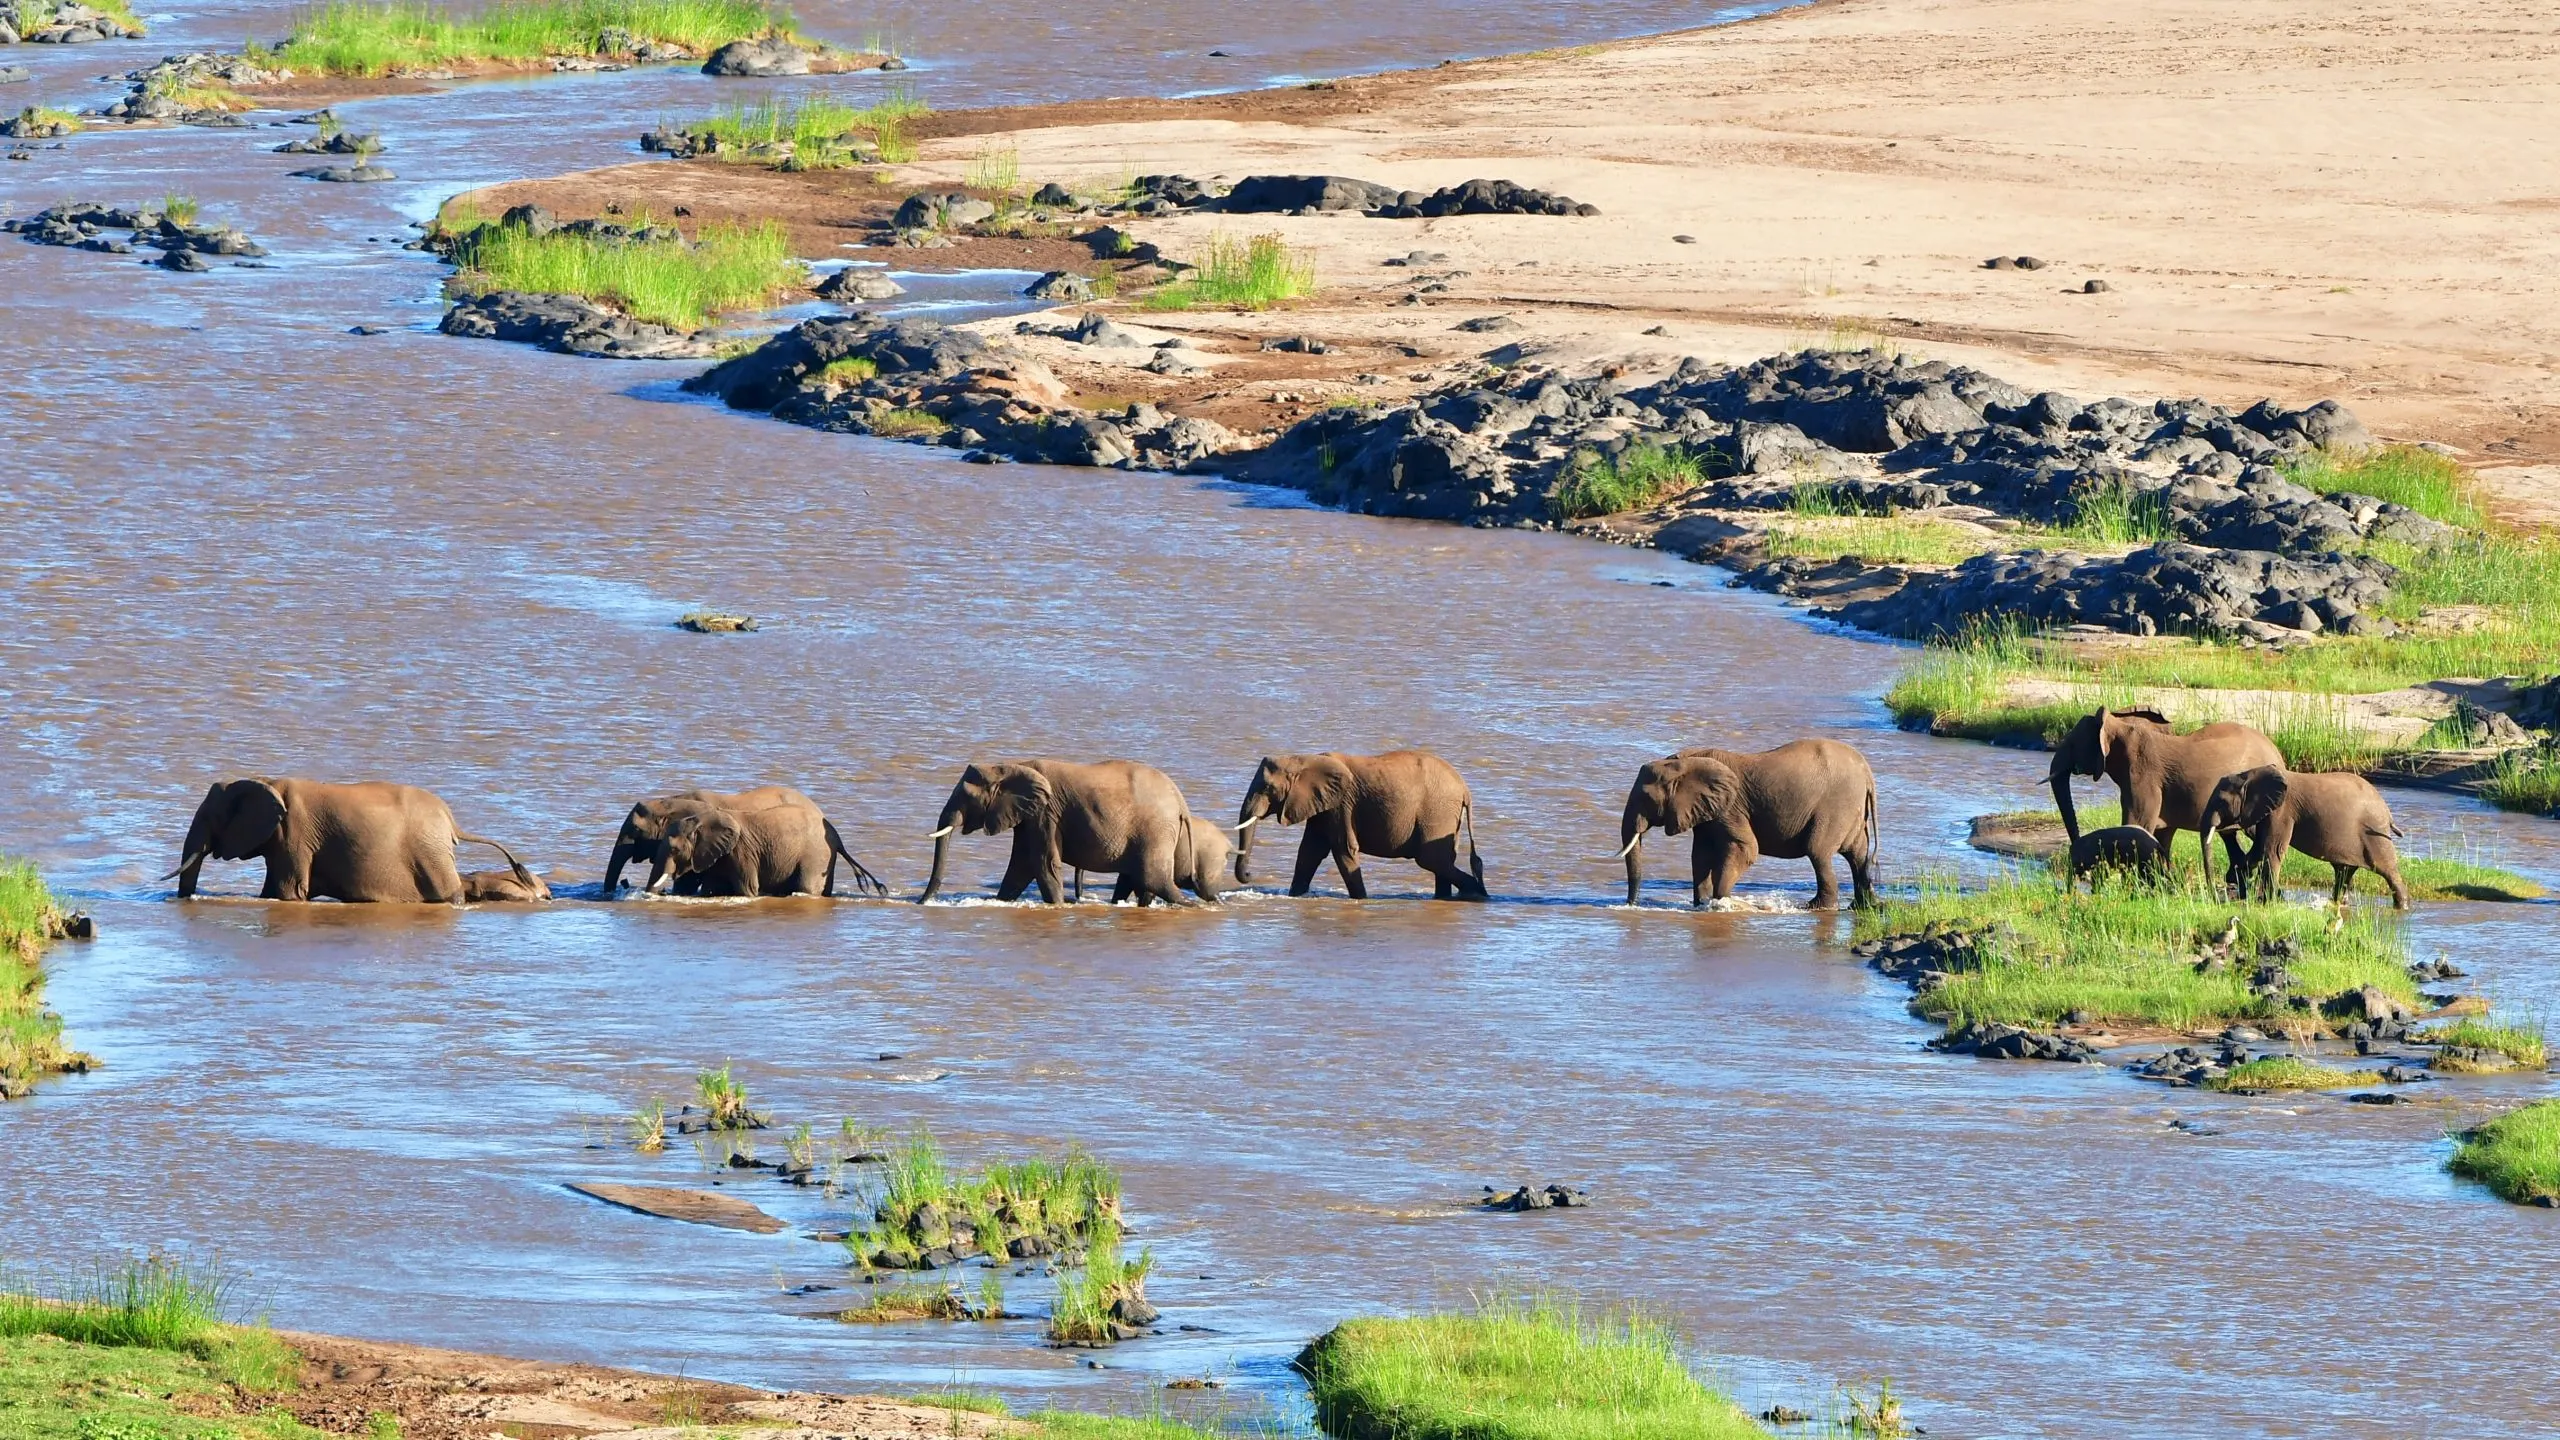 elephants crossing Olifant river,evening shot,Kruger national park